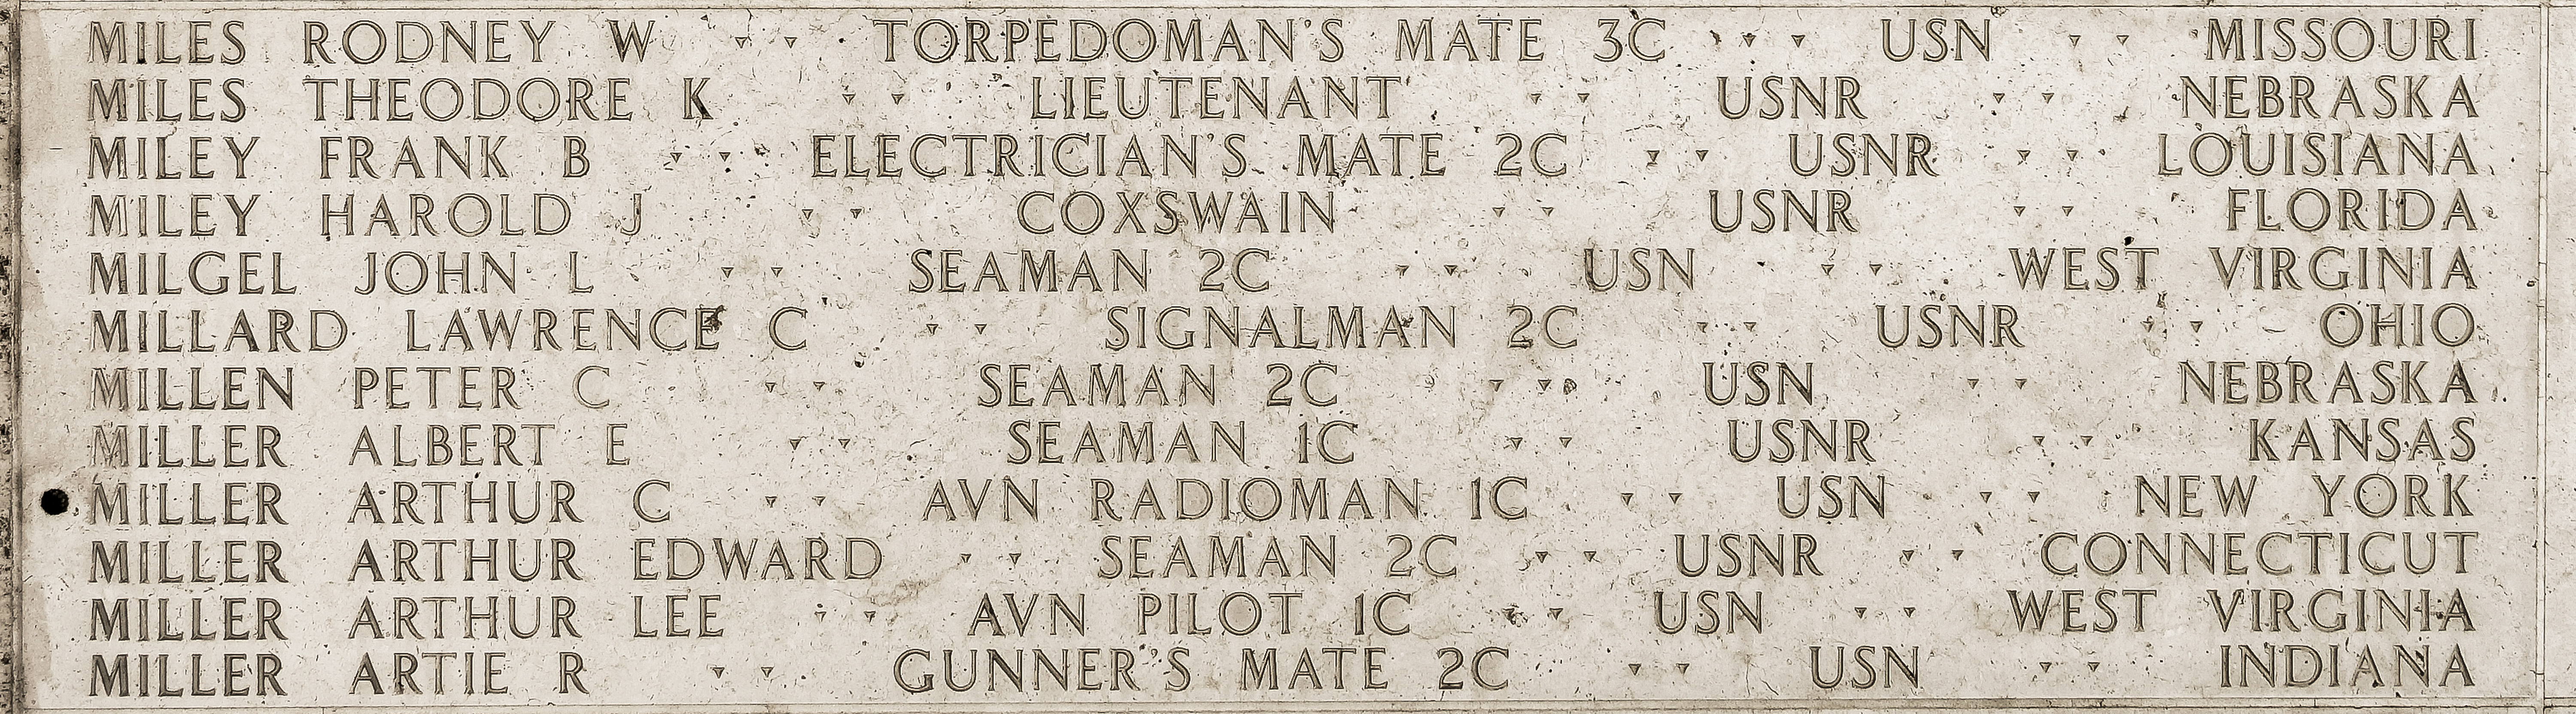 John L. Milgel, Seaman Second Class